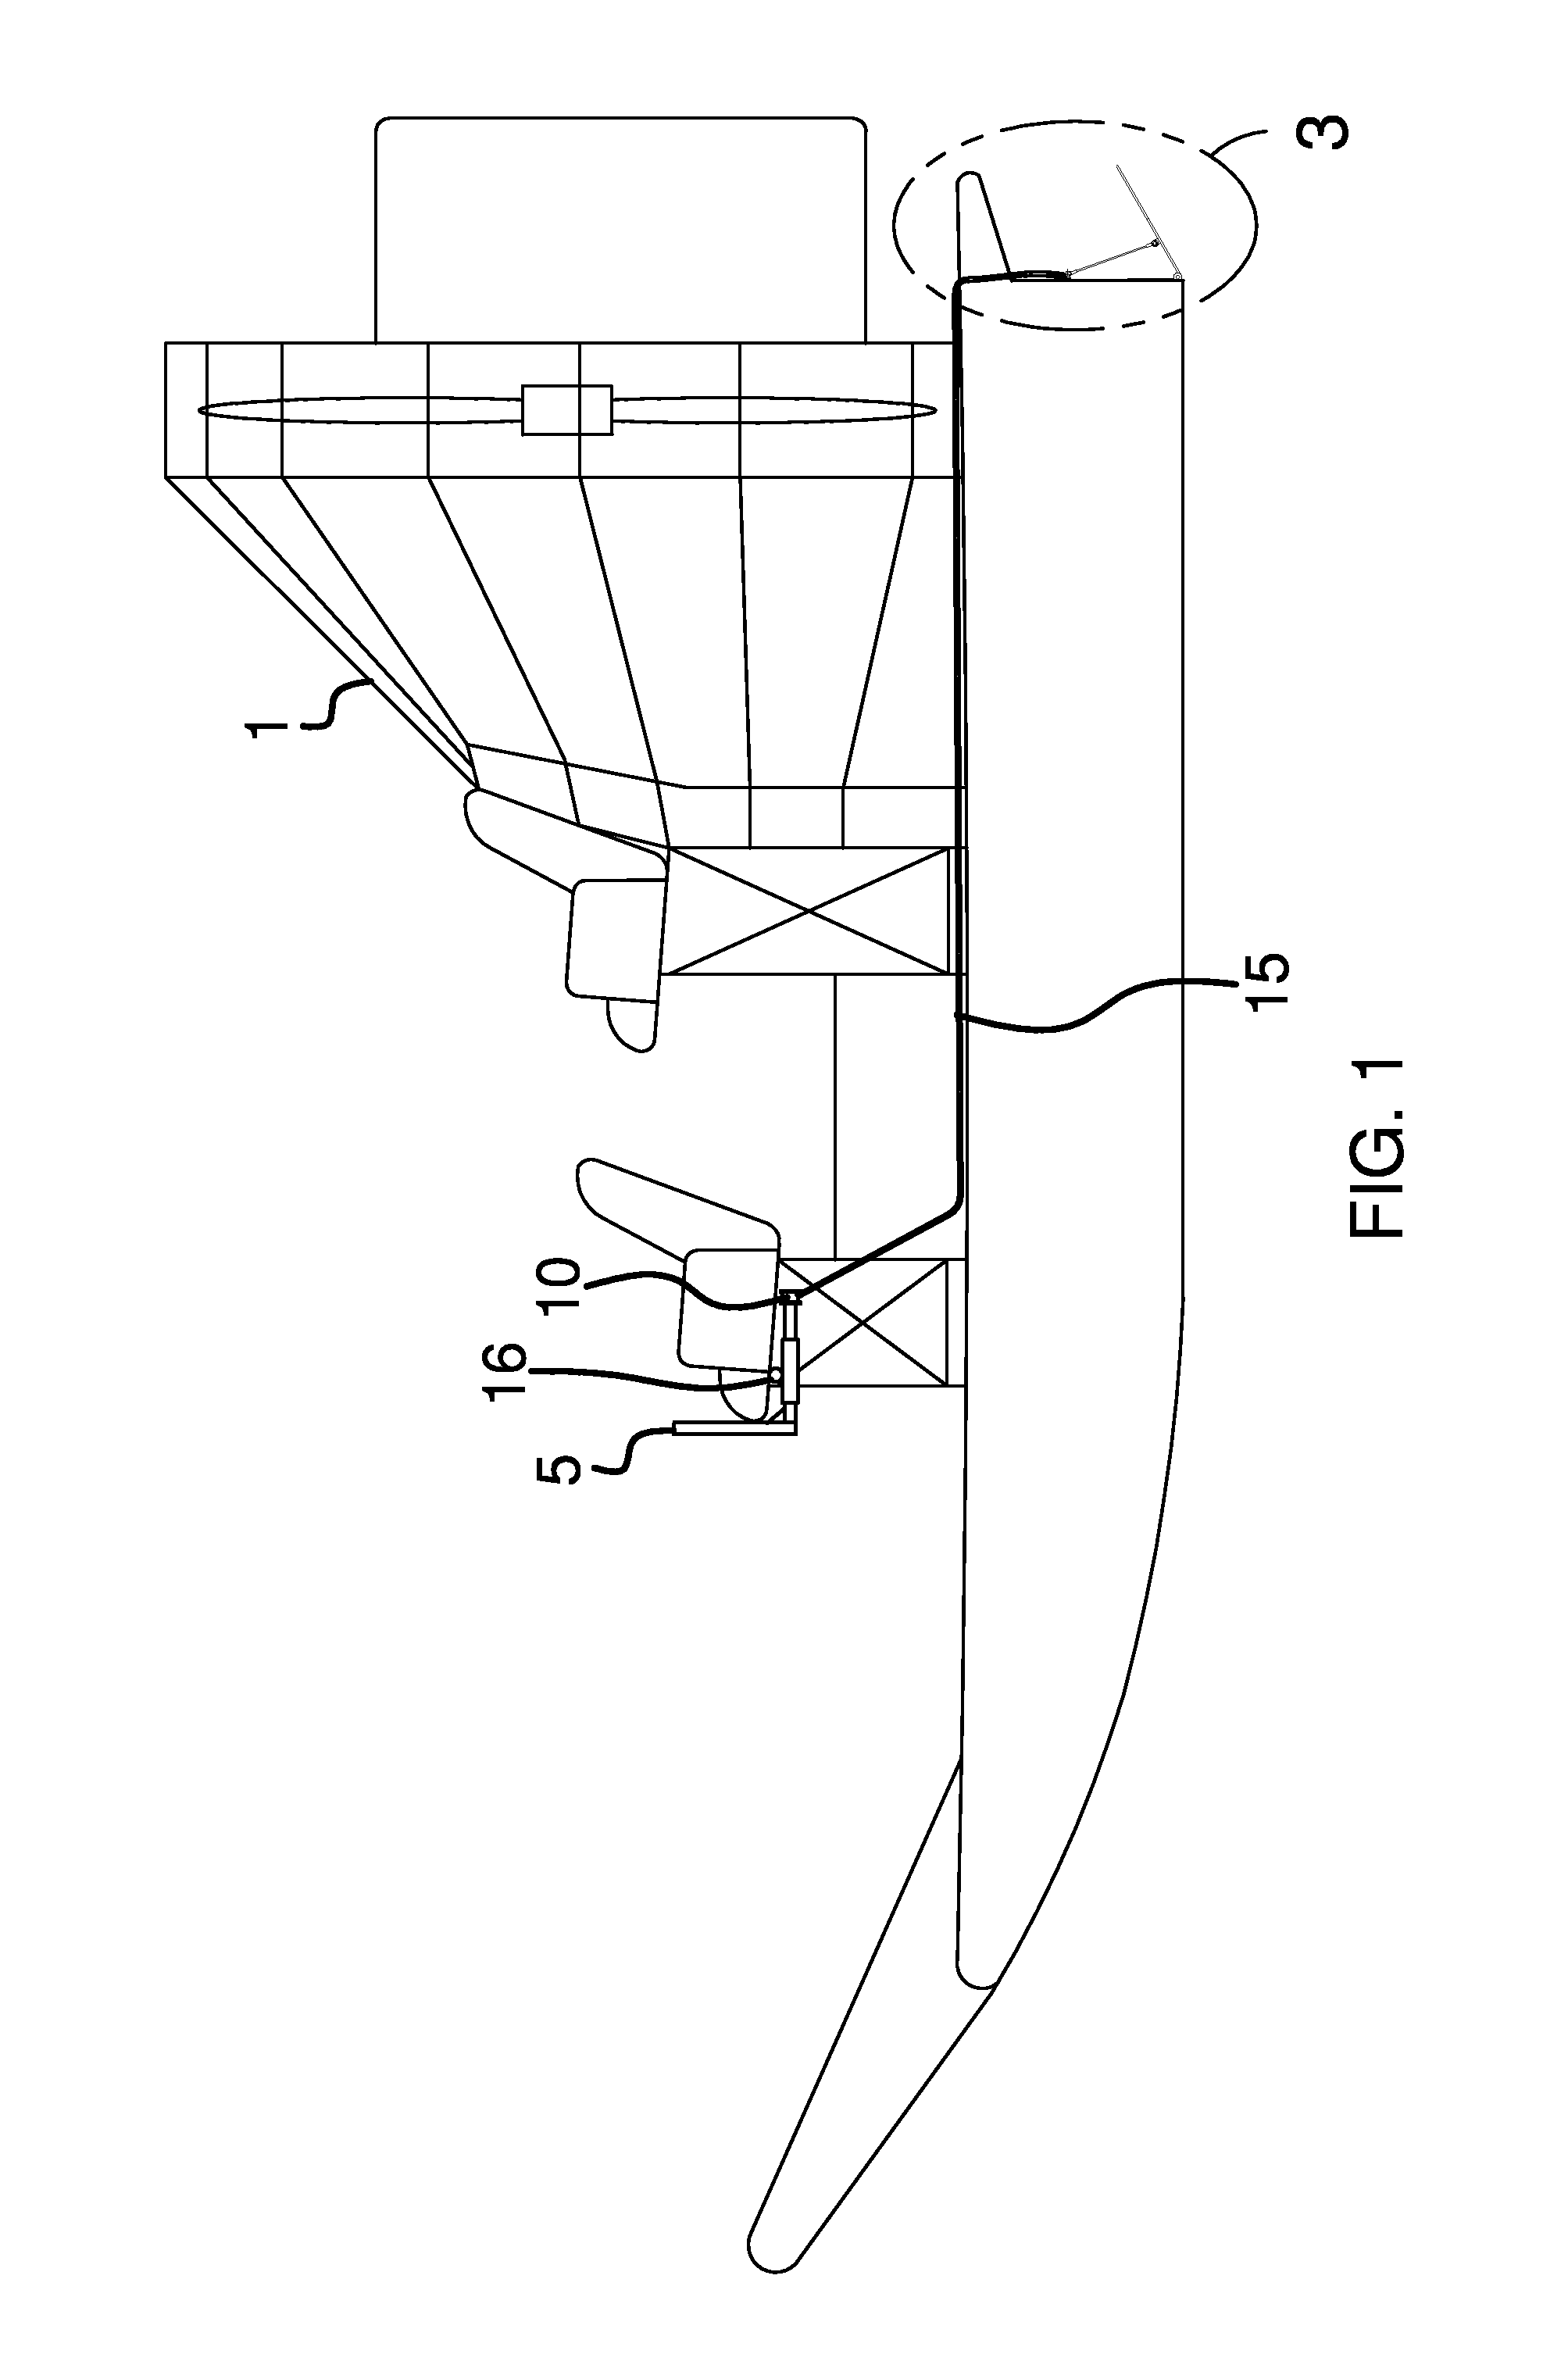 Airboat braking system